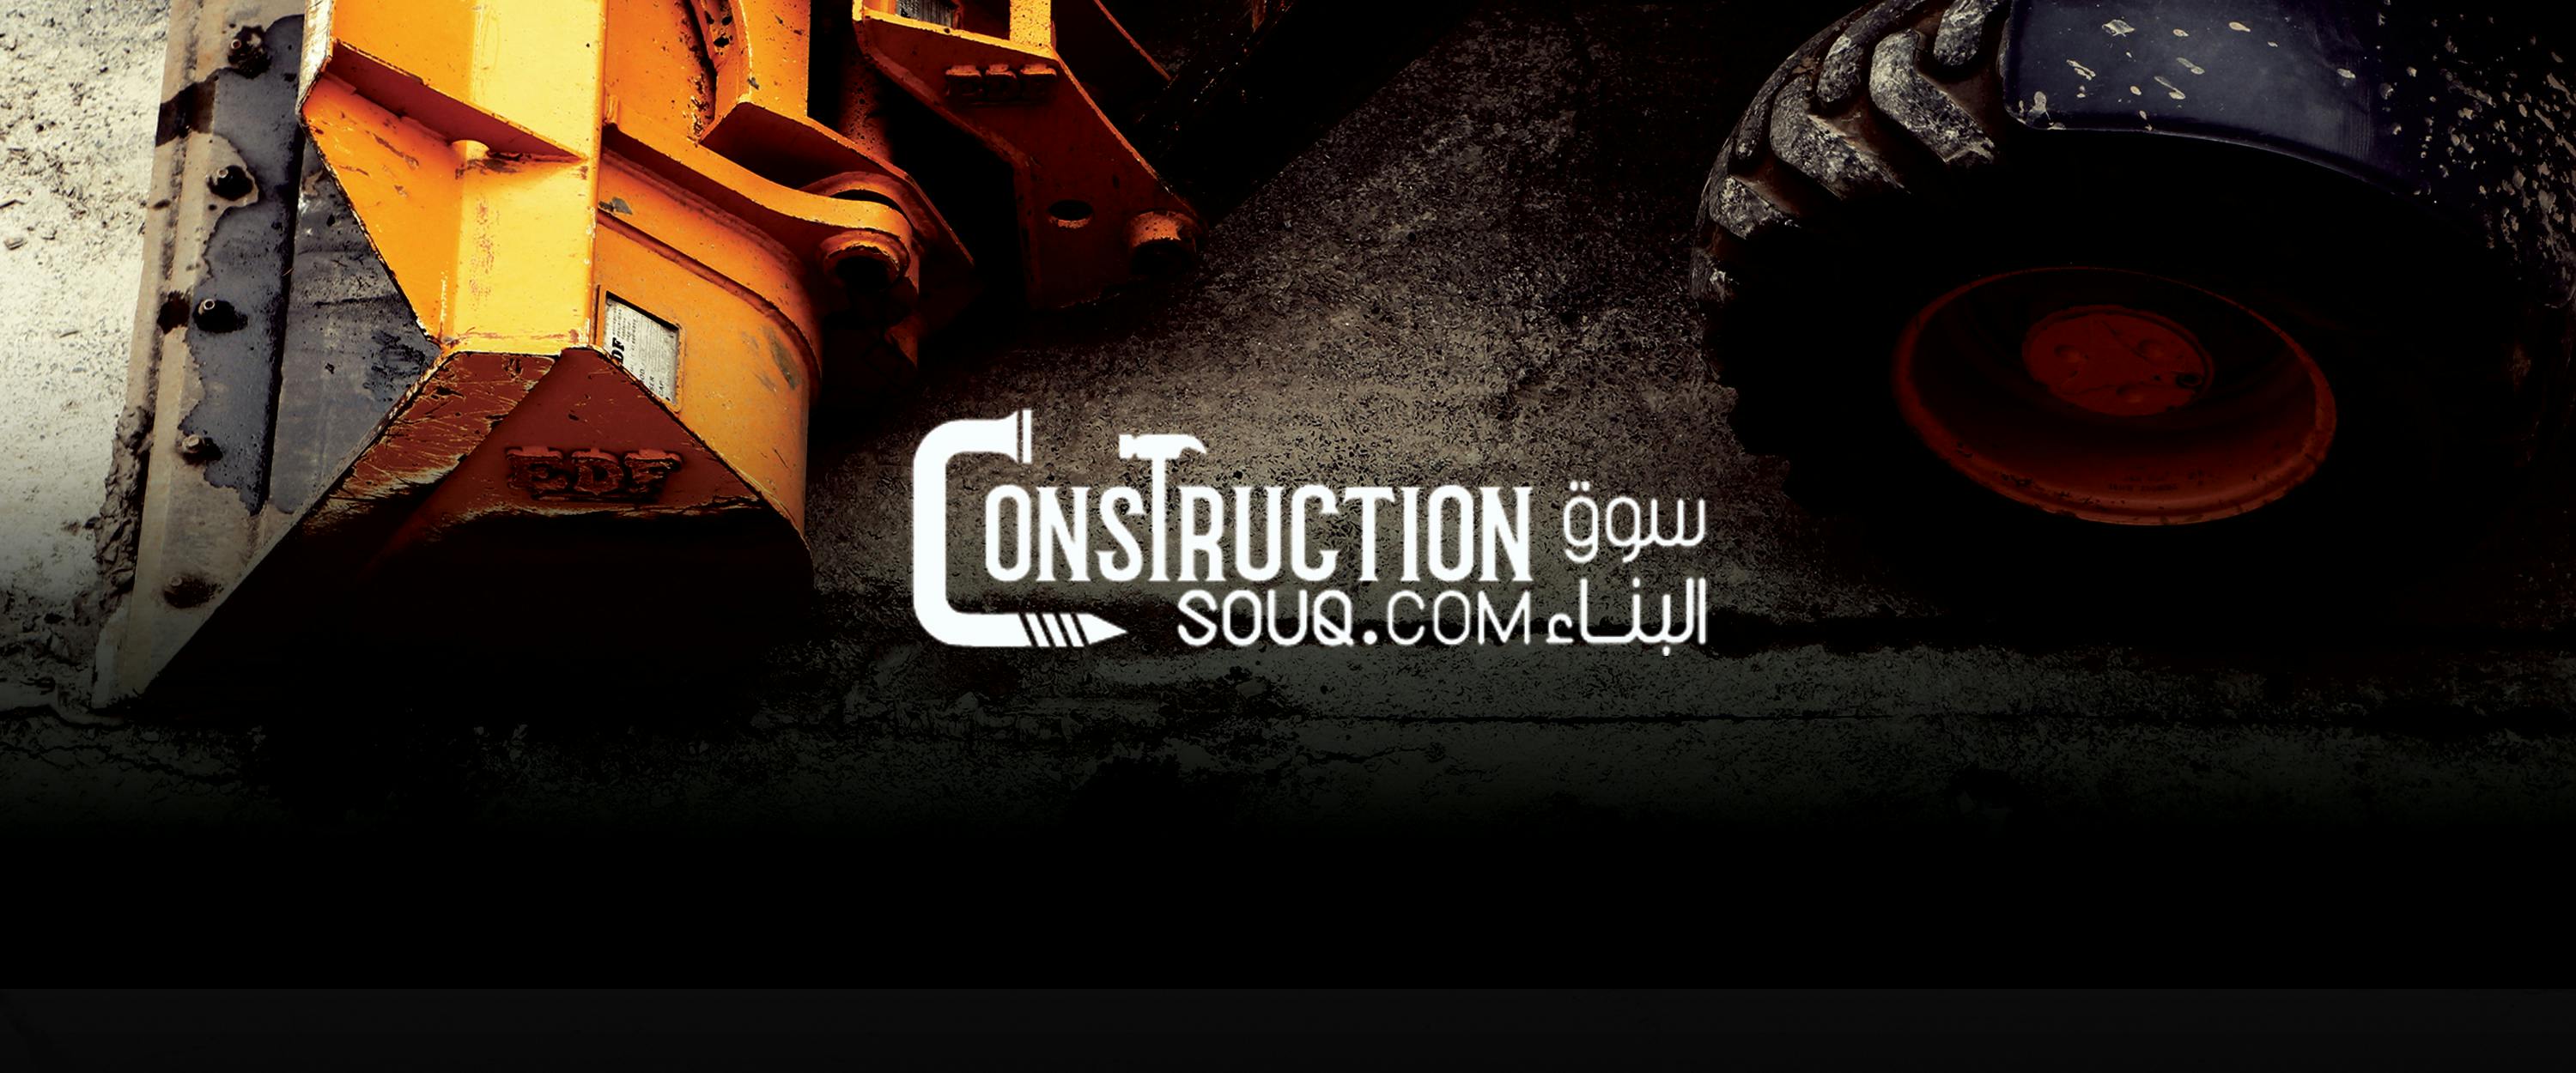 Construction Souq